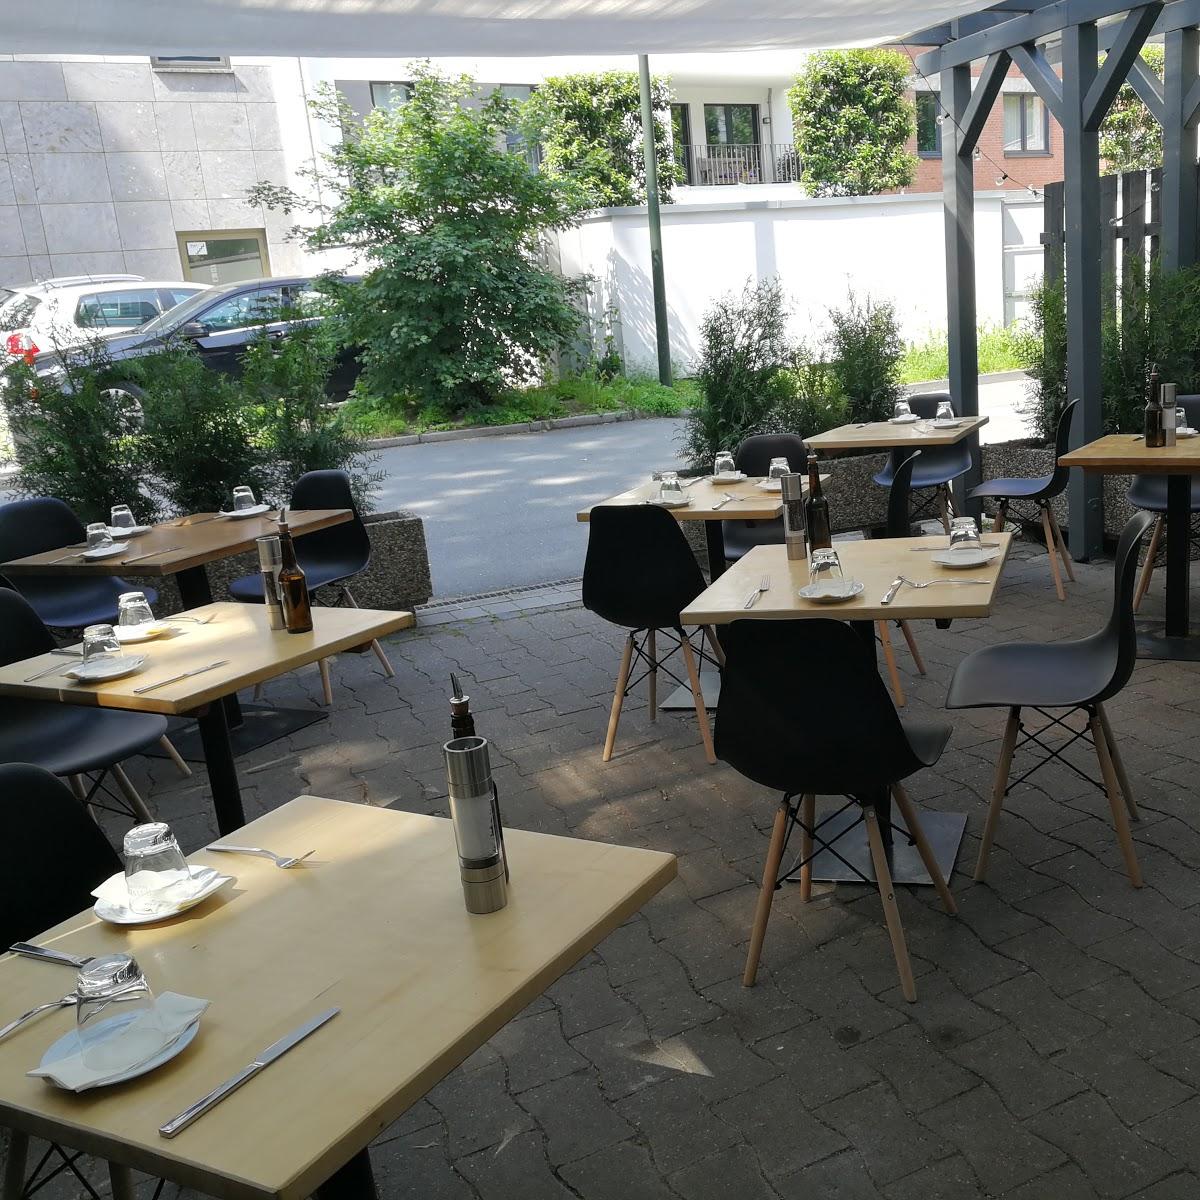 Restaurant "EssBar - fein & pfiffig" in Düsseldorf